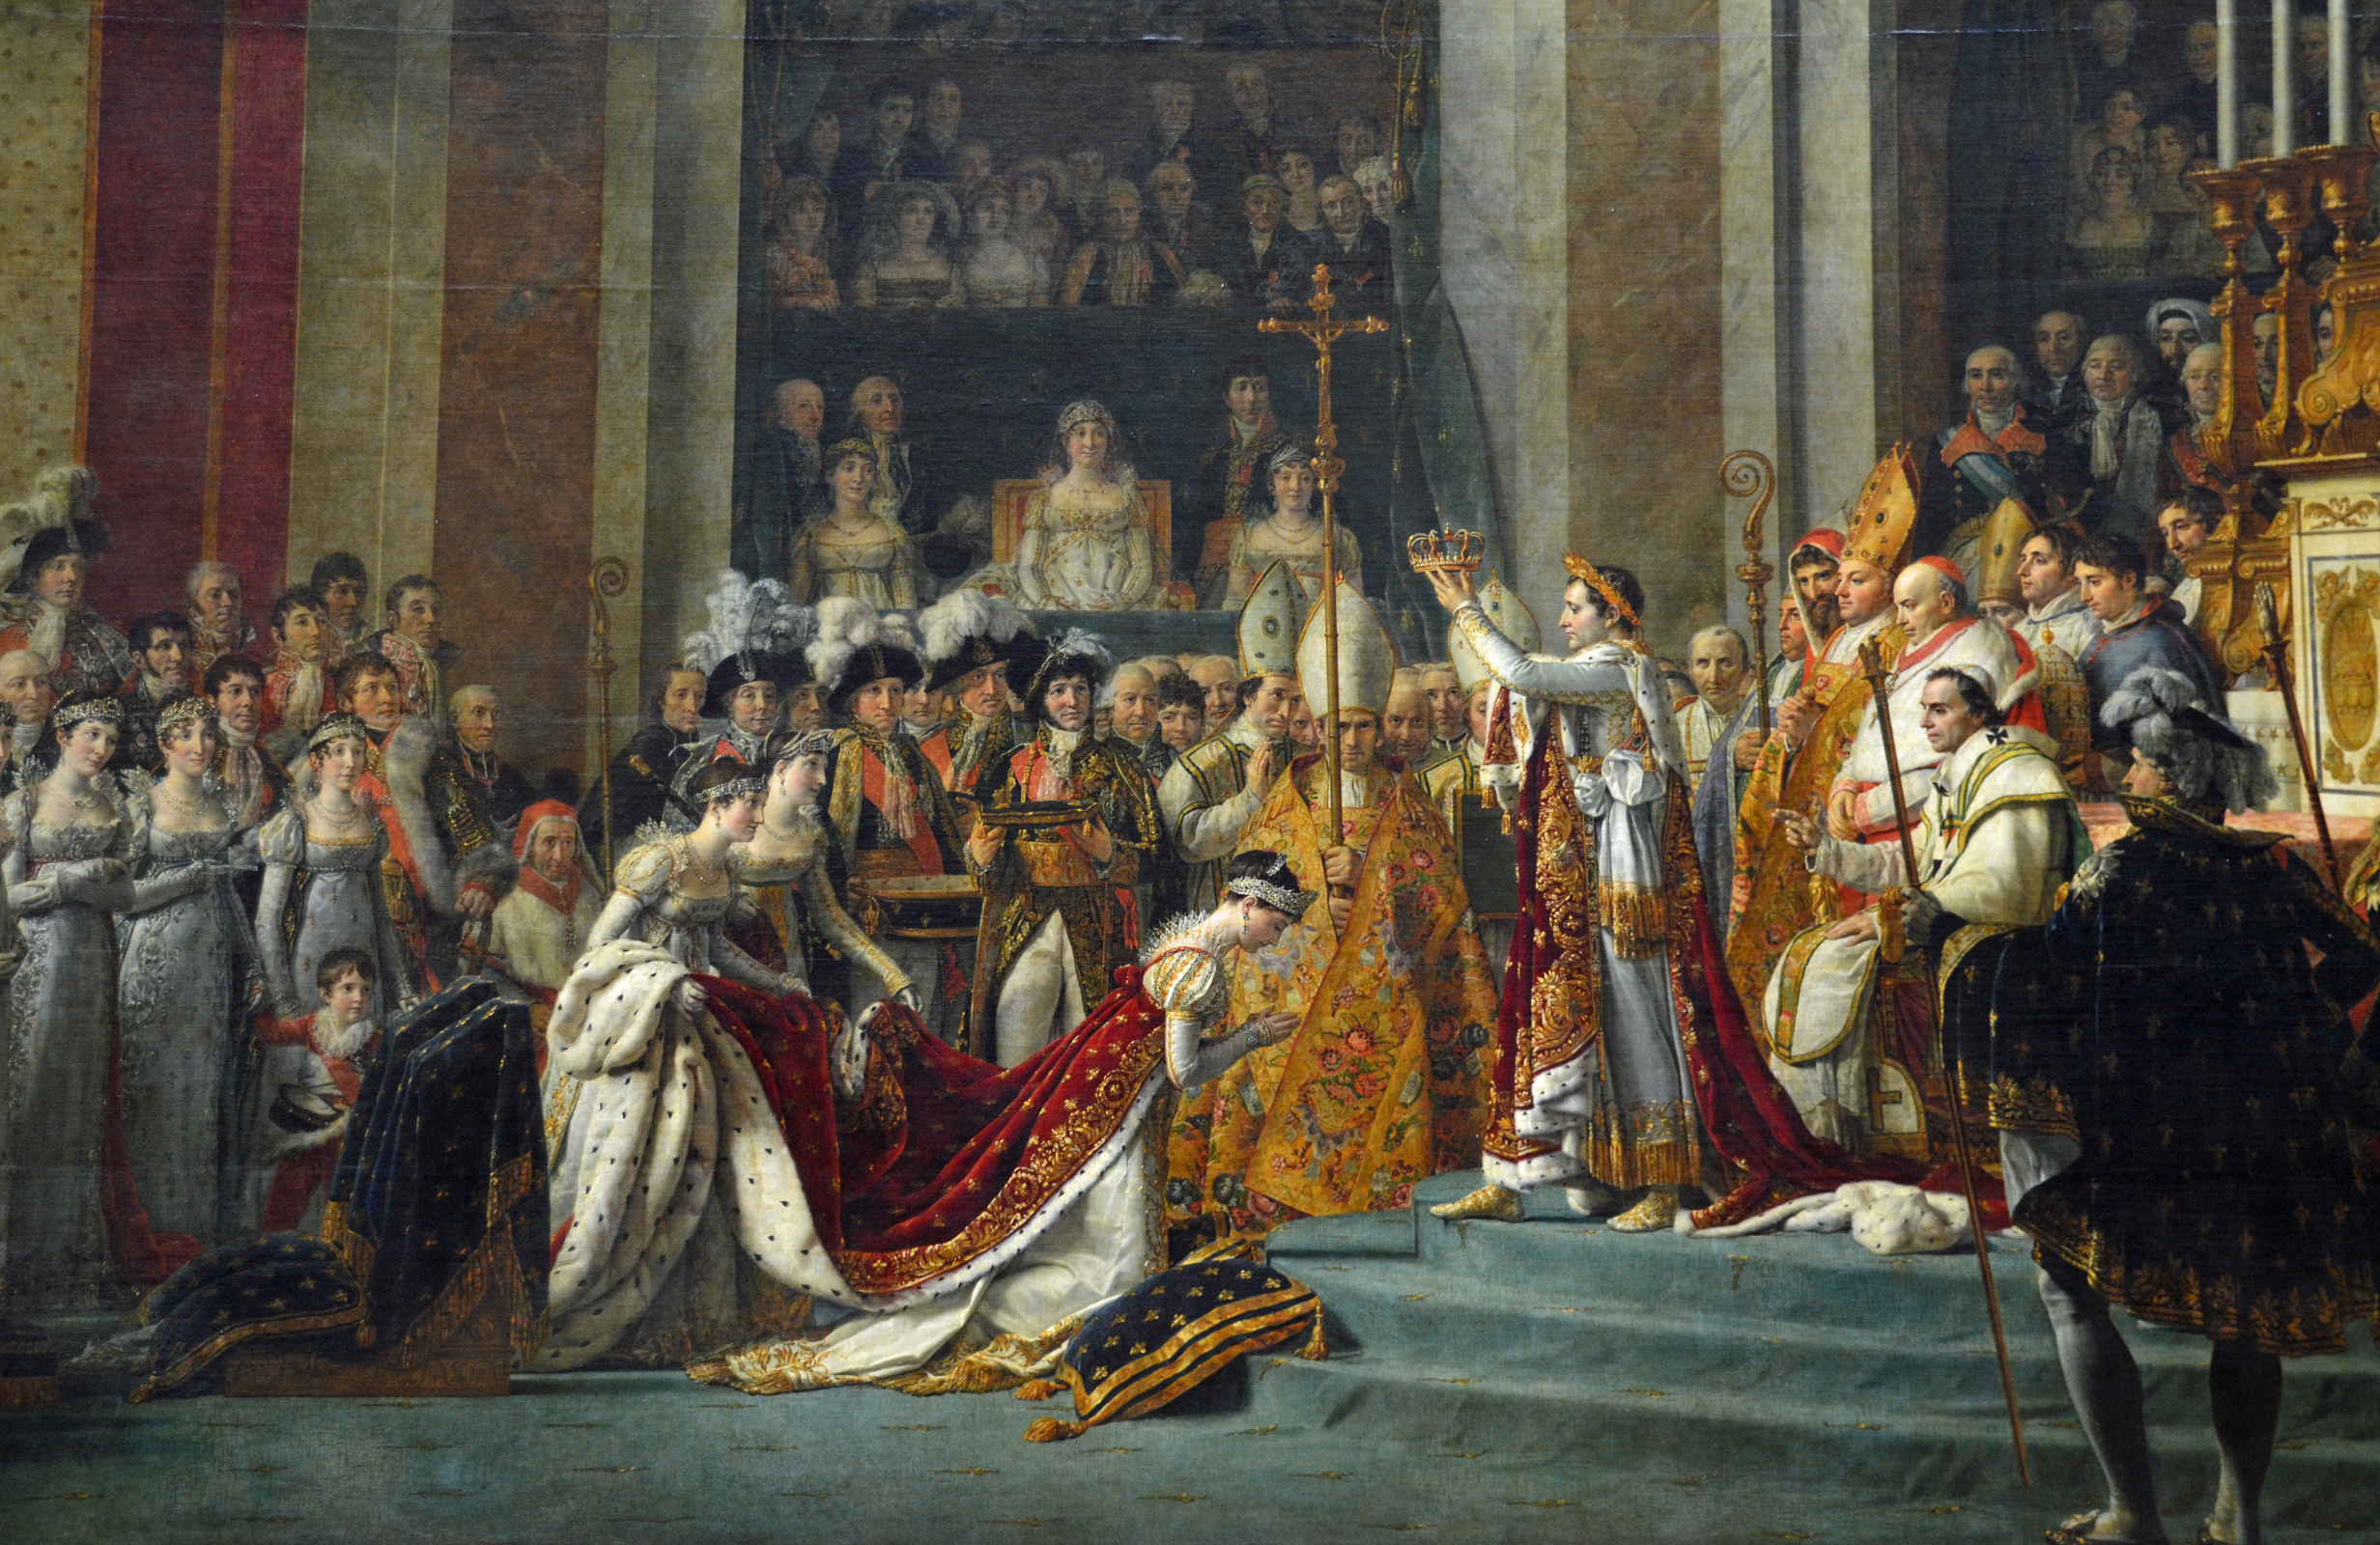 Жак-Луи Давид - Коронация Наполеона в соборе Нотр-Дам 2 декабря 1804 года,  1807, 979×621 см: Описание произведения | Артхив